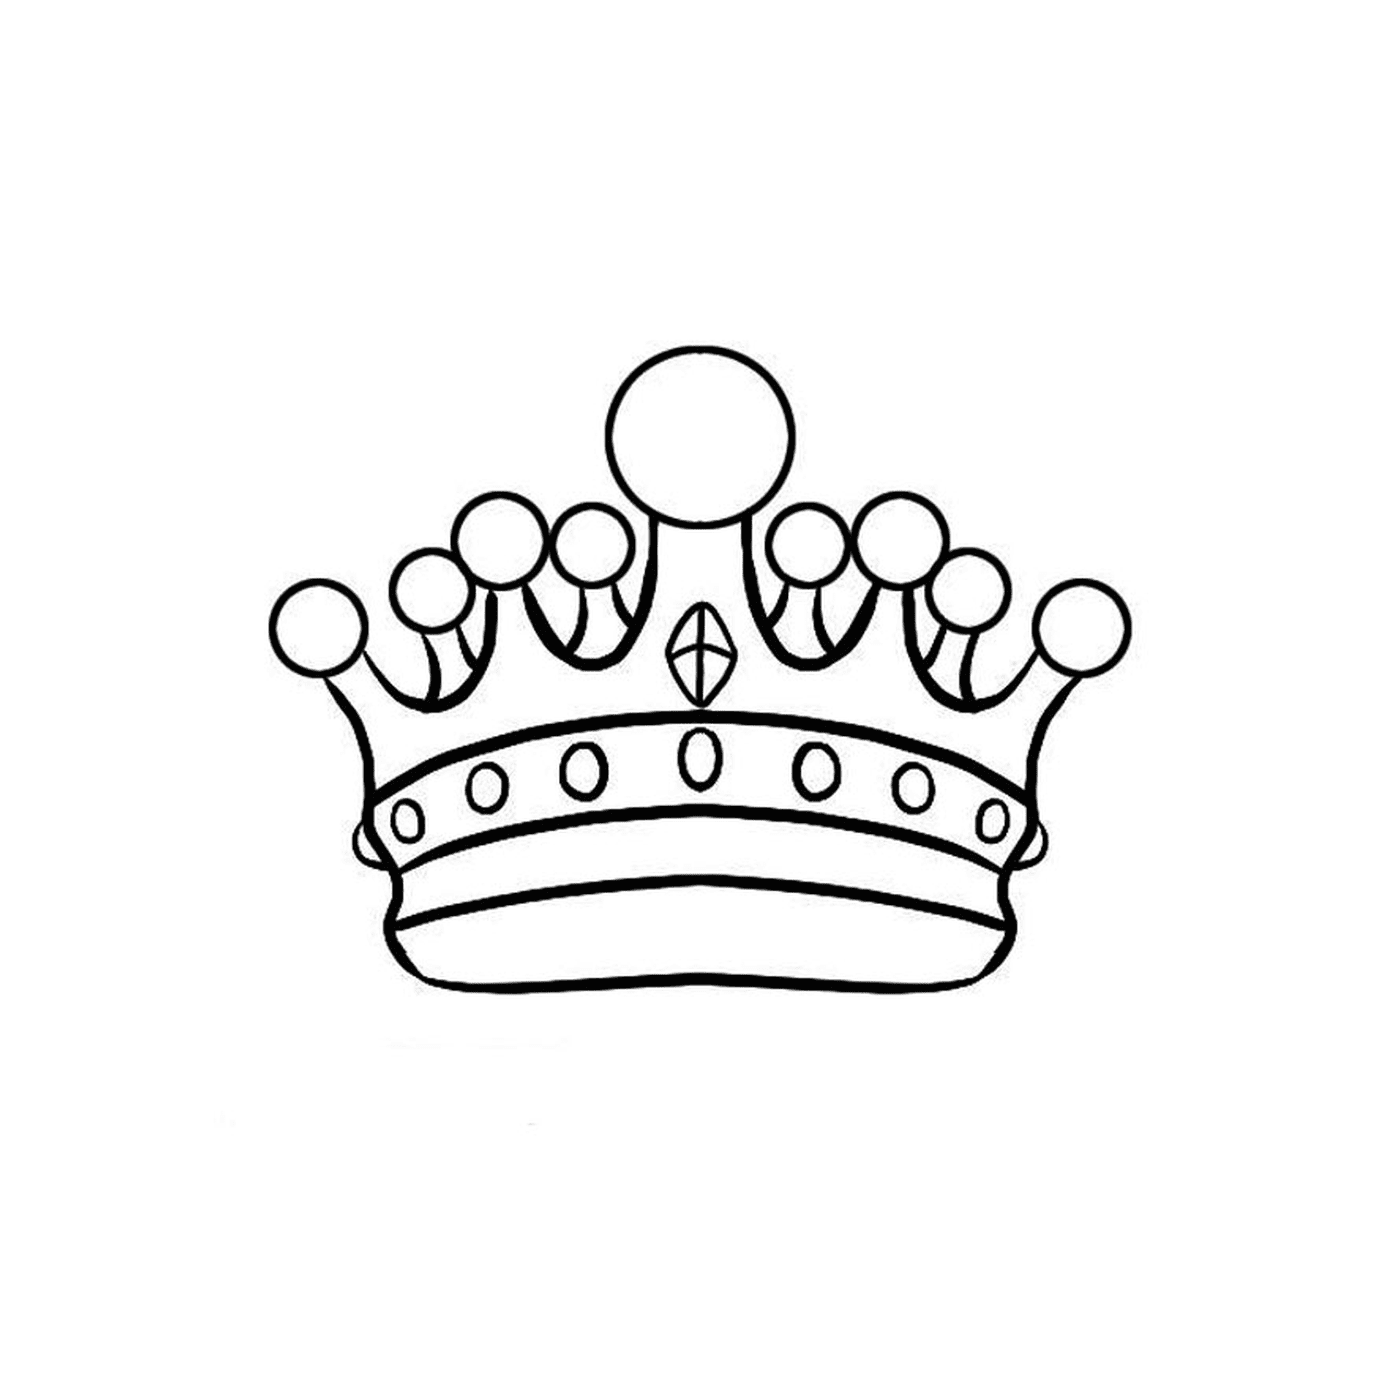   Une couronne sur un fond blanc 